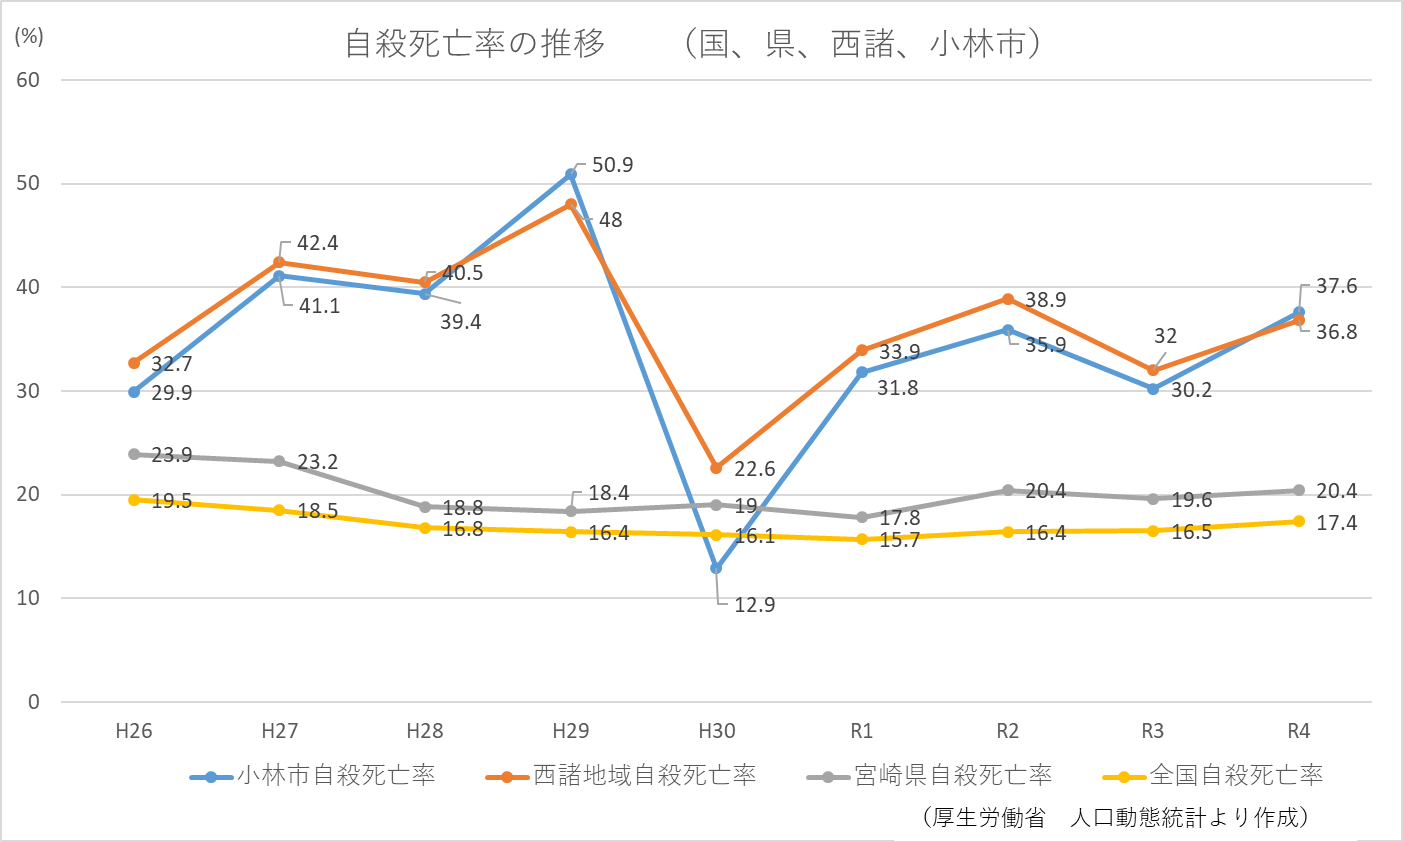 小林市の自殺死亡率の推移のグラフ詳細は以下